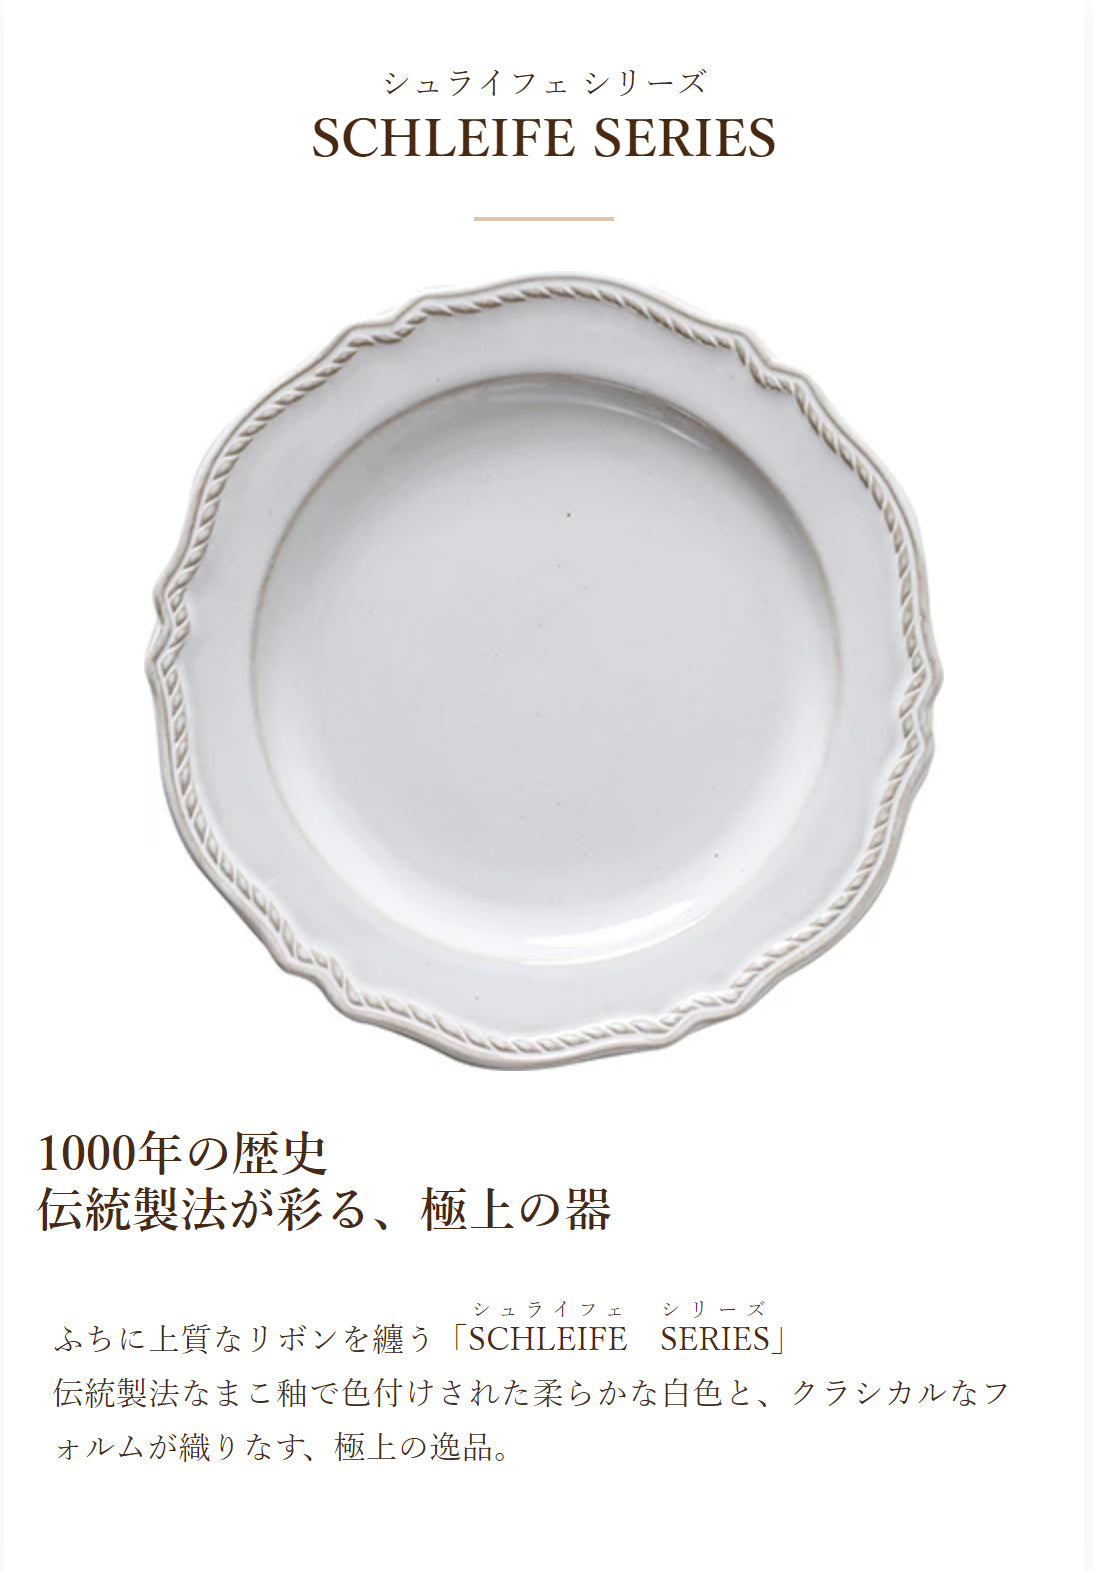 白いお皿 - 食器